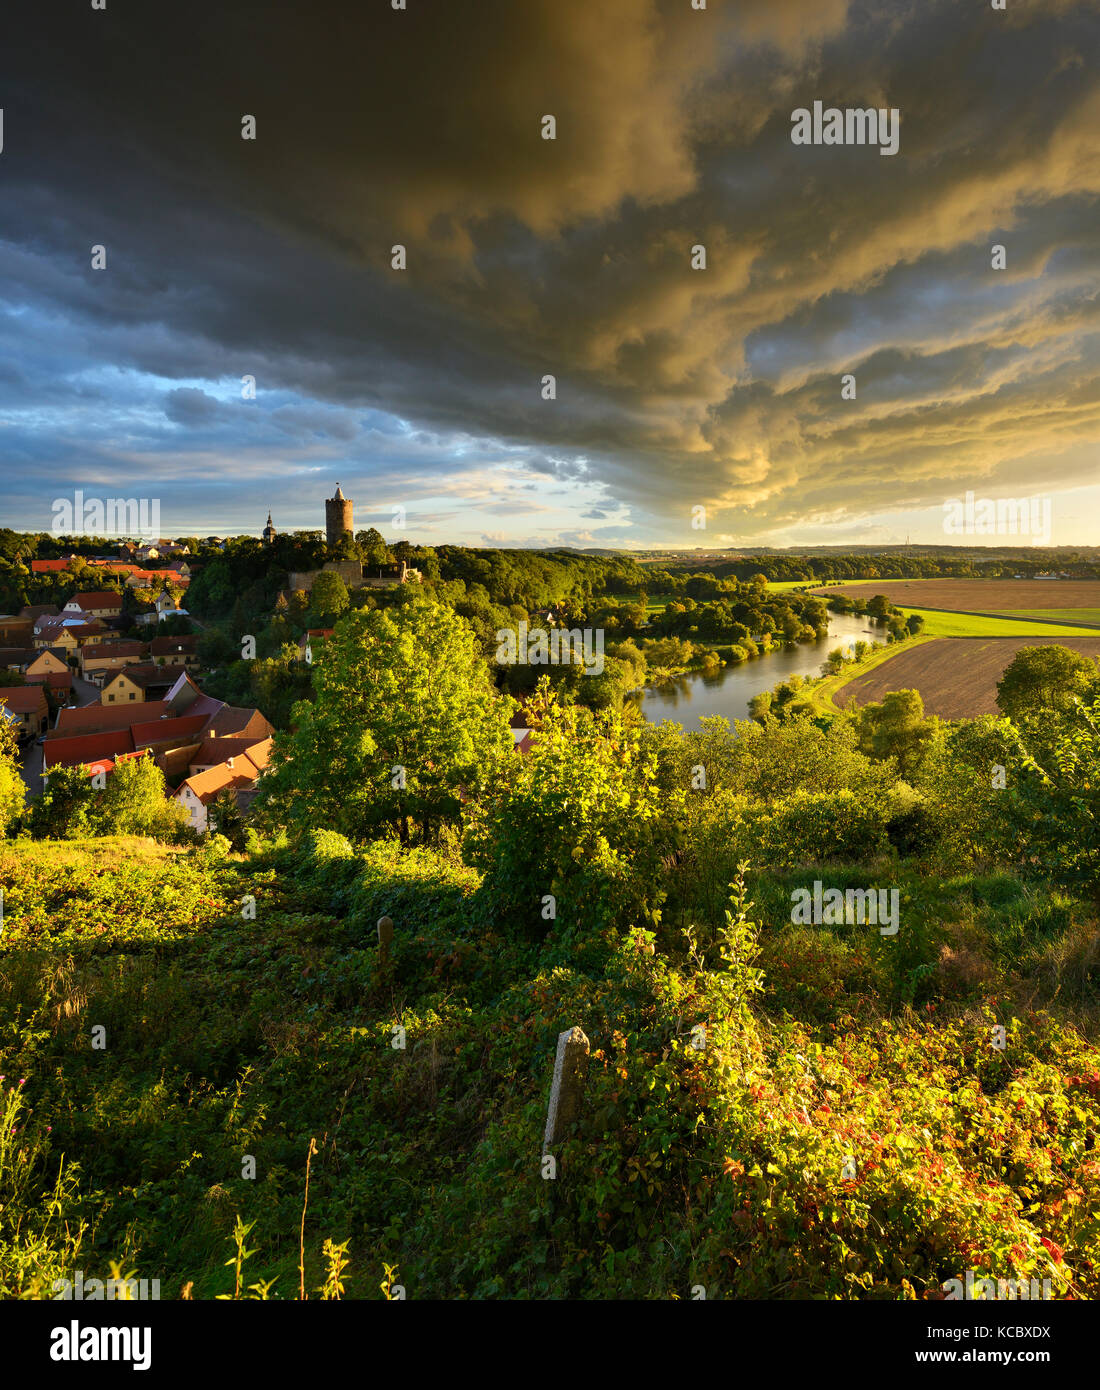 Espectacular atmósfera de nubes sobre el pueblo de Schönburg y el castillo en el valle de Saale, Naumburg, Sajonia-Anhalt, Alemania Foto de stock